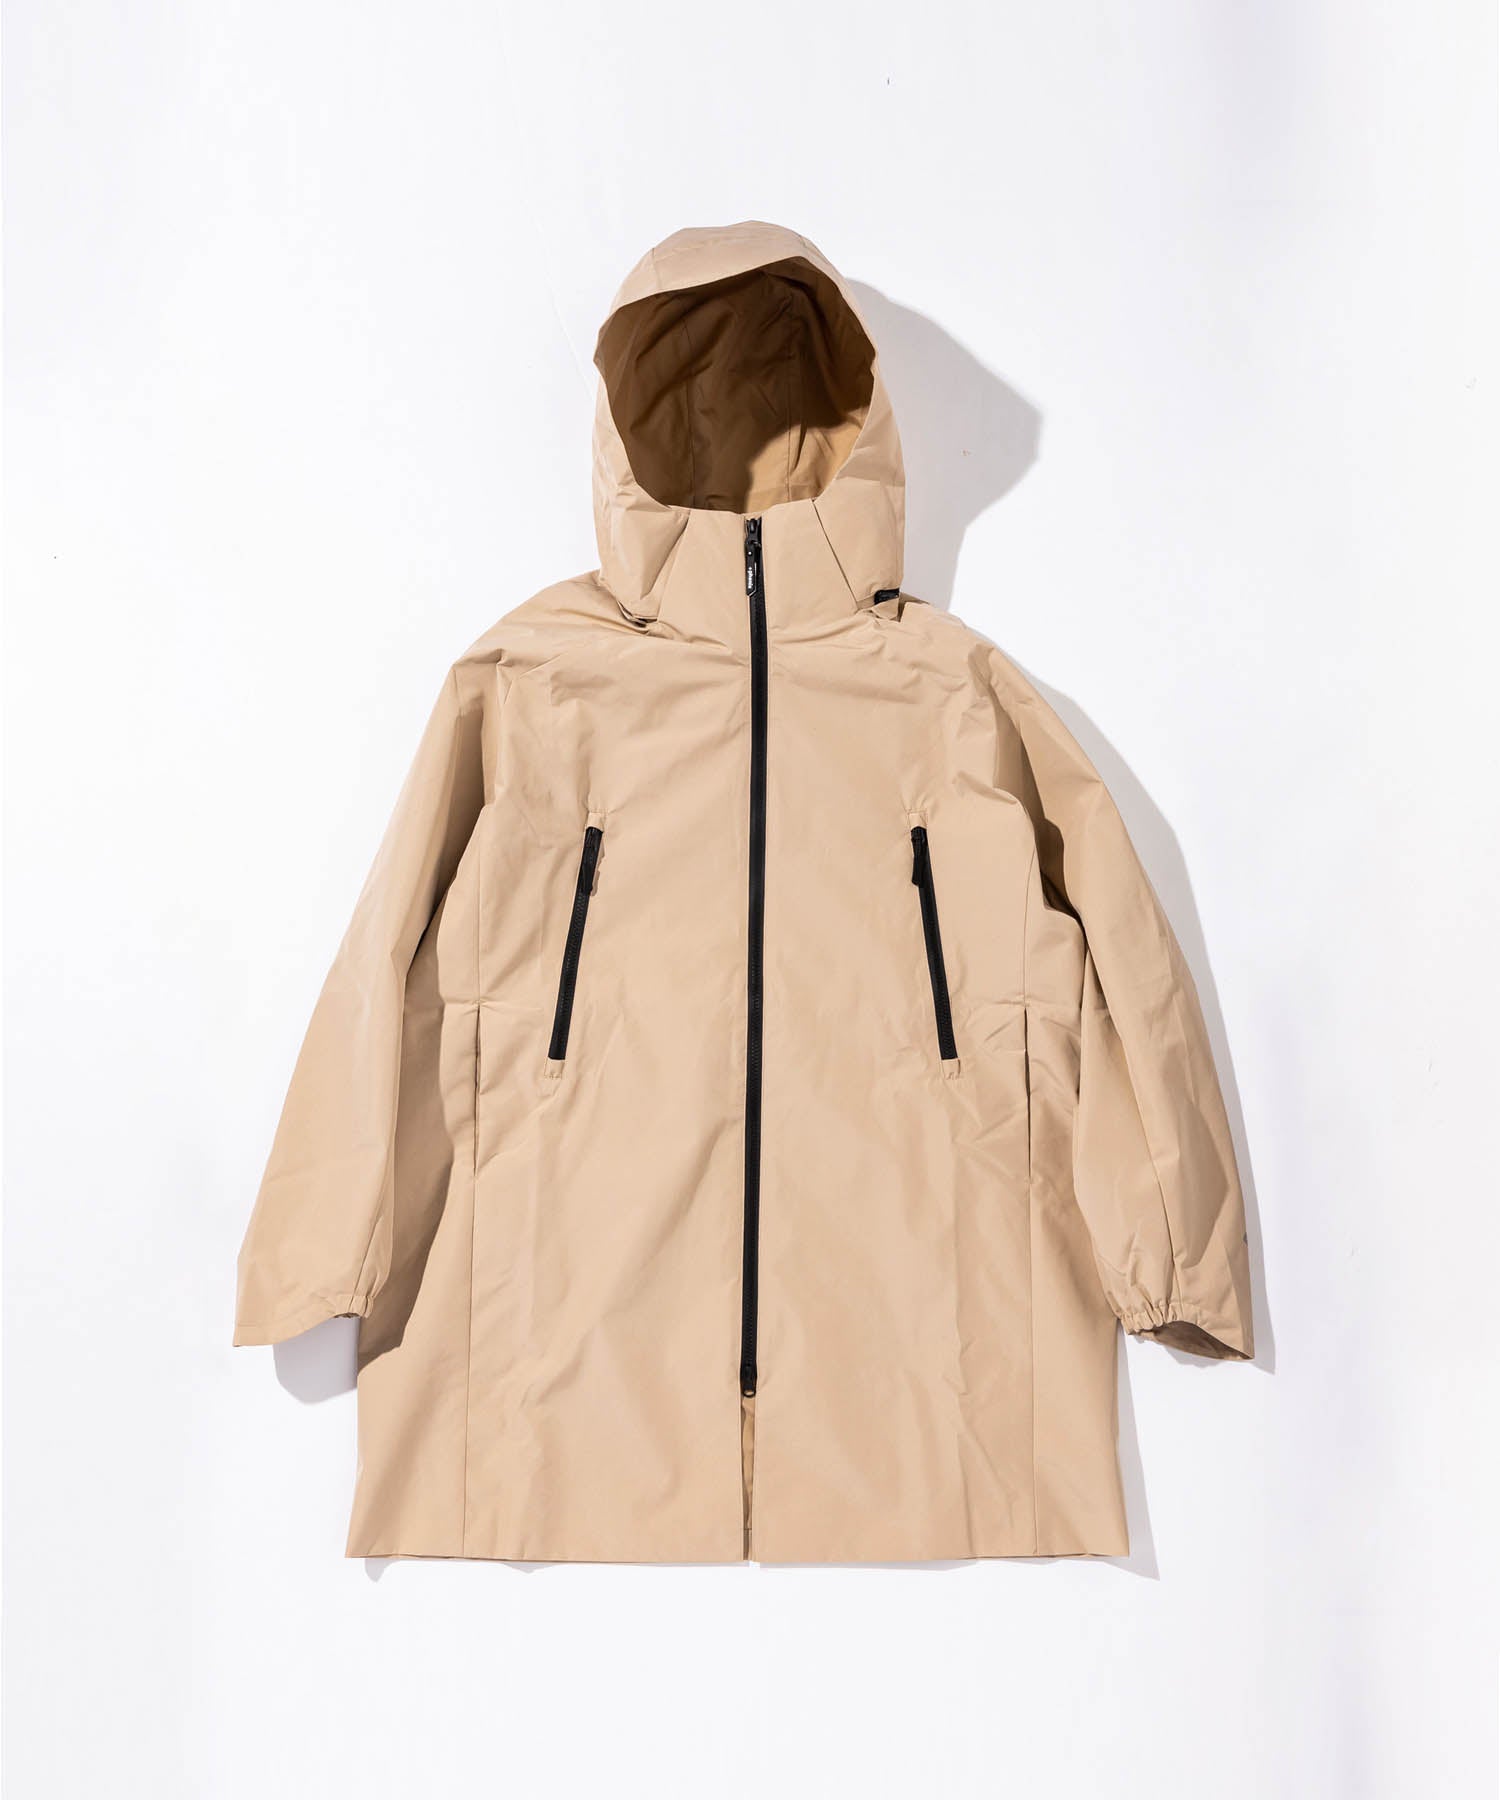 phenix 【MENS】GORE-TEX INFINIUM stand-up collar hooded coat 